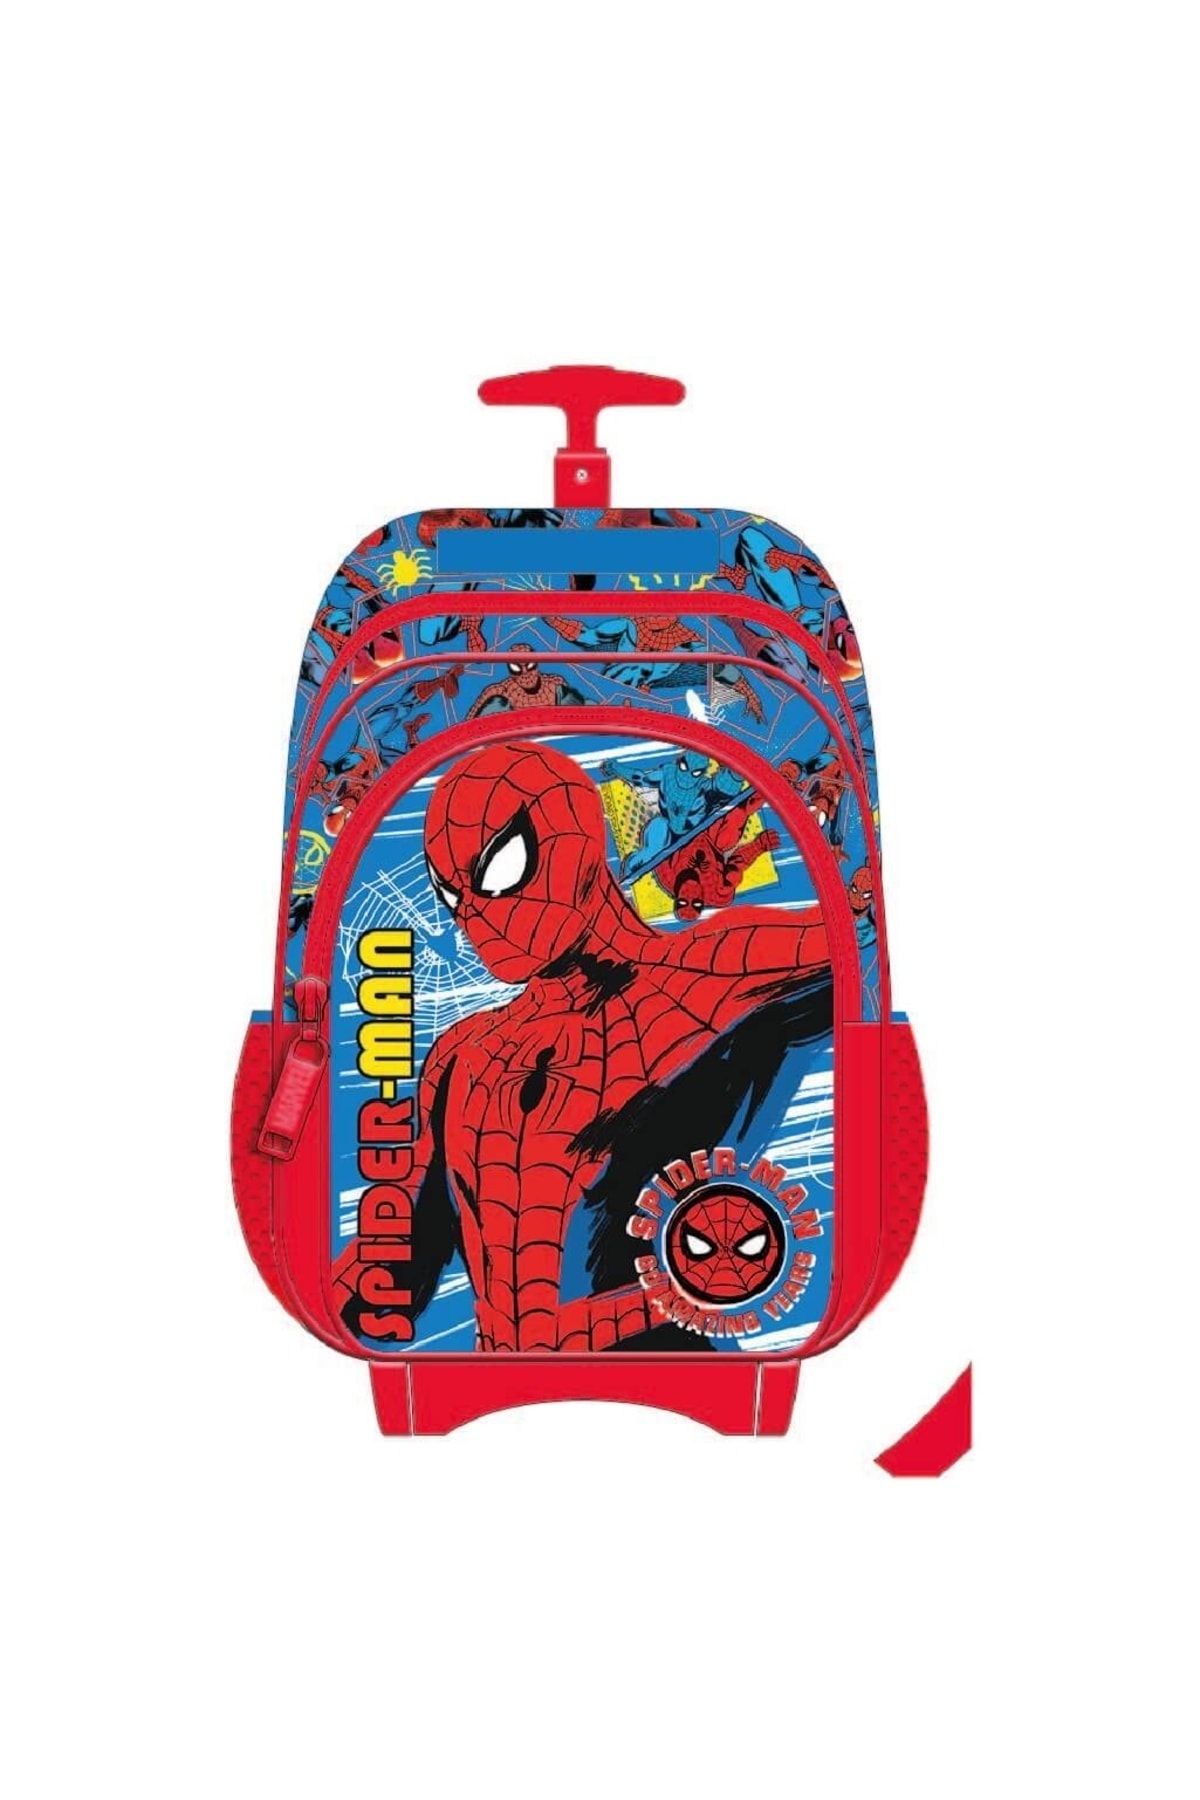 DİSNEY Spiderman Lisanslı Tekerlekli Çekçekli Okul Çantası Örümcek Adam